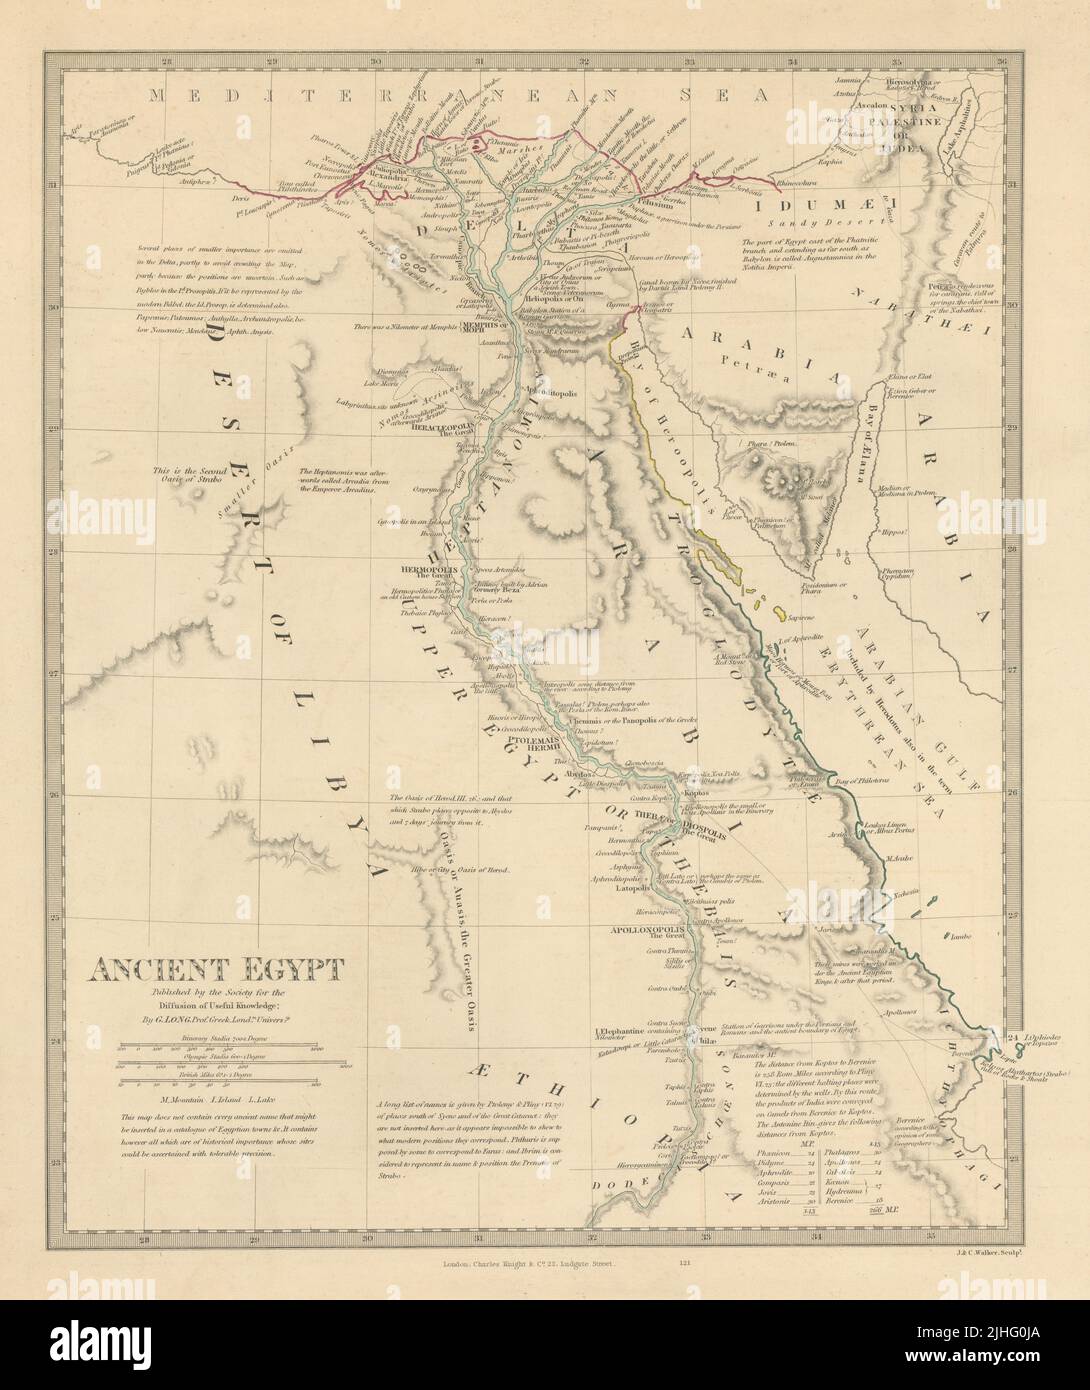 ÉGYPTE ANCIENNE. Noms et sites anciens de la vallée du Nil. Couleur d'origine. Carte SDUK 1851 Banque D'Images